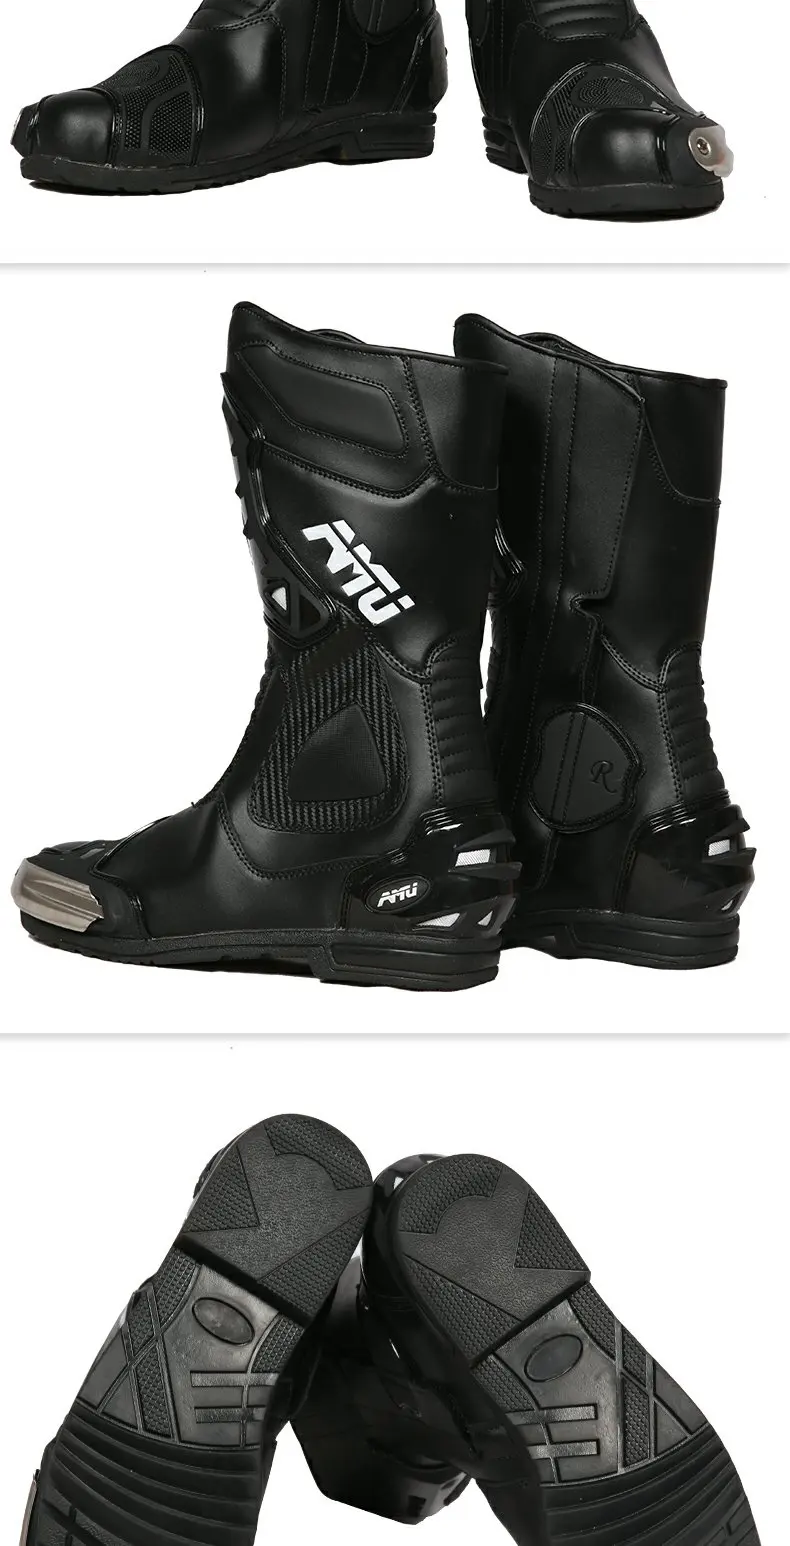 AMU мотоциклетные защитные ботинки для мотокросса, мотокросса, грязи, байкерских ботинок, беговые Водонепроницаемые кожаные ботинки